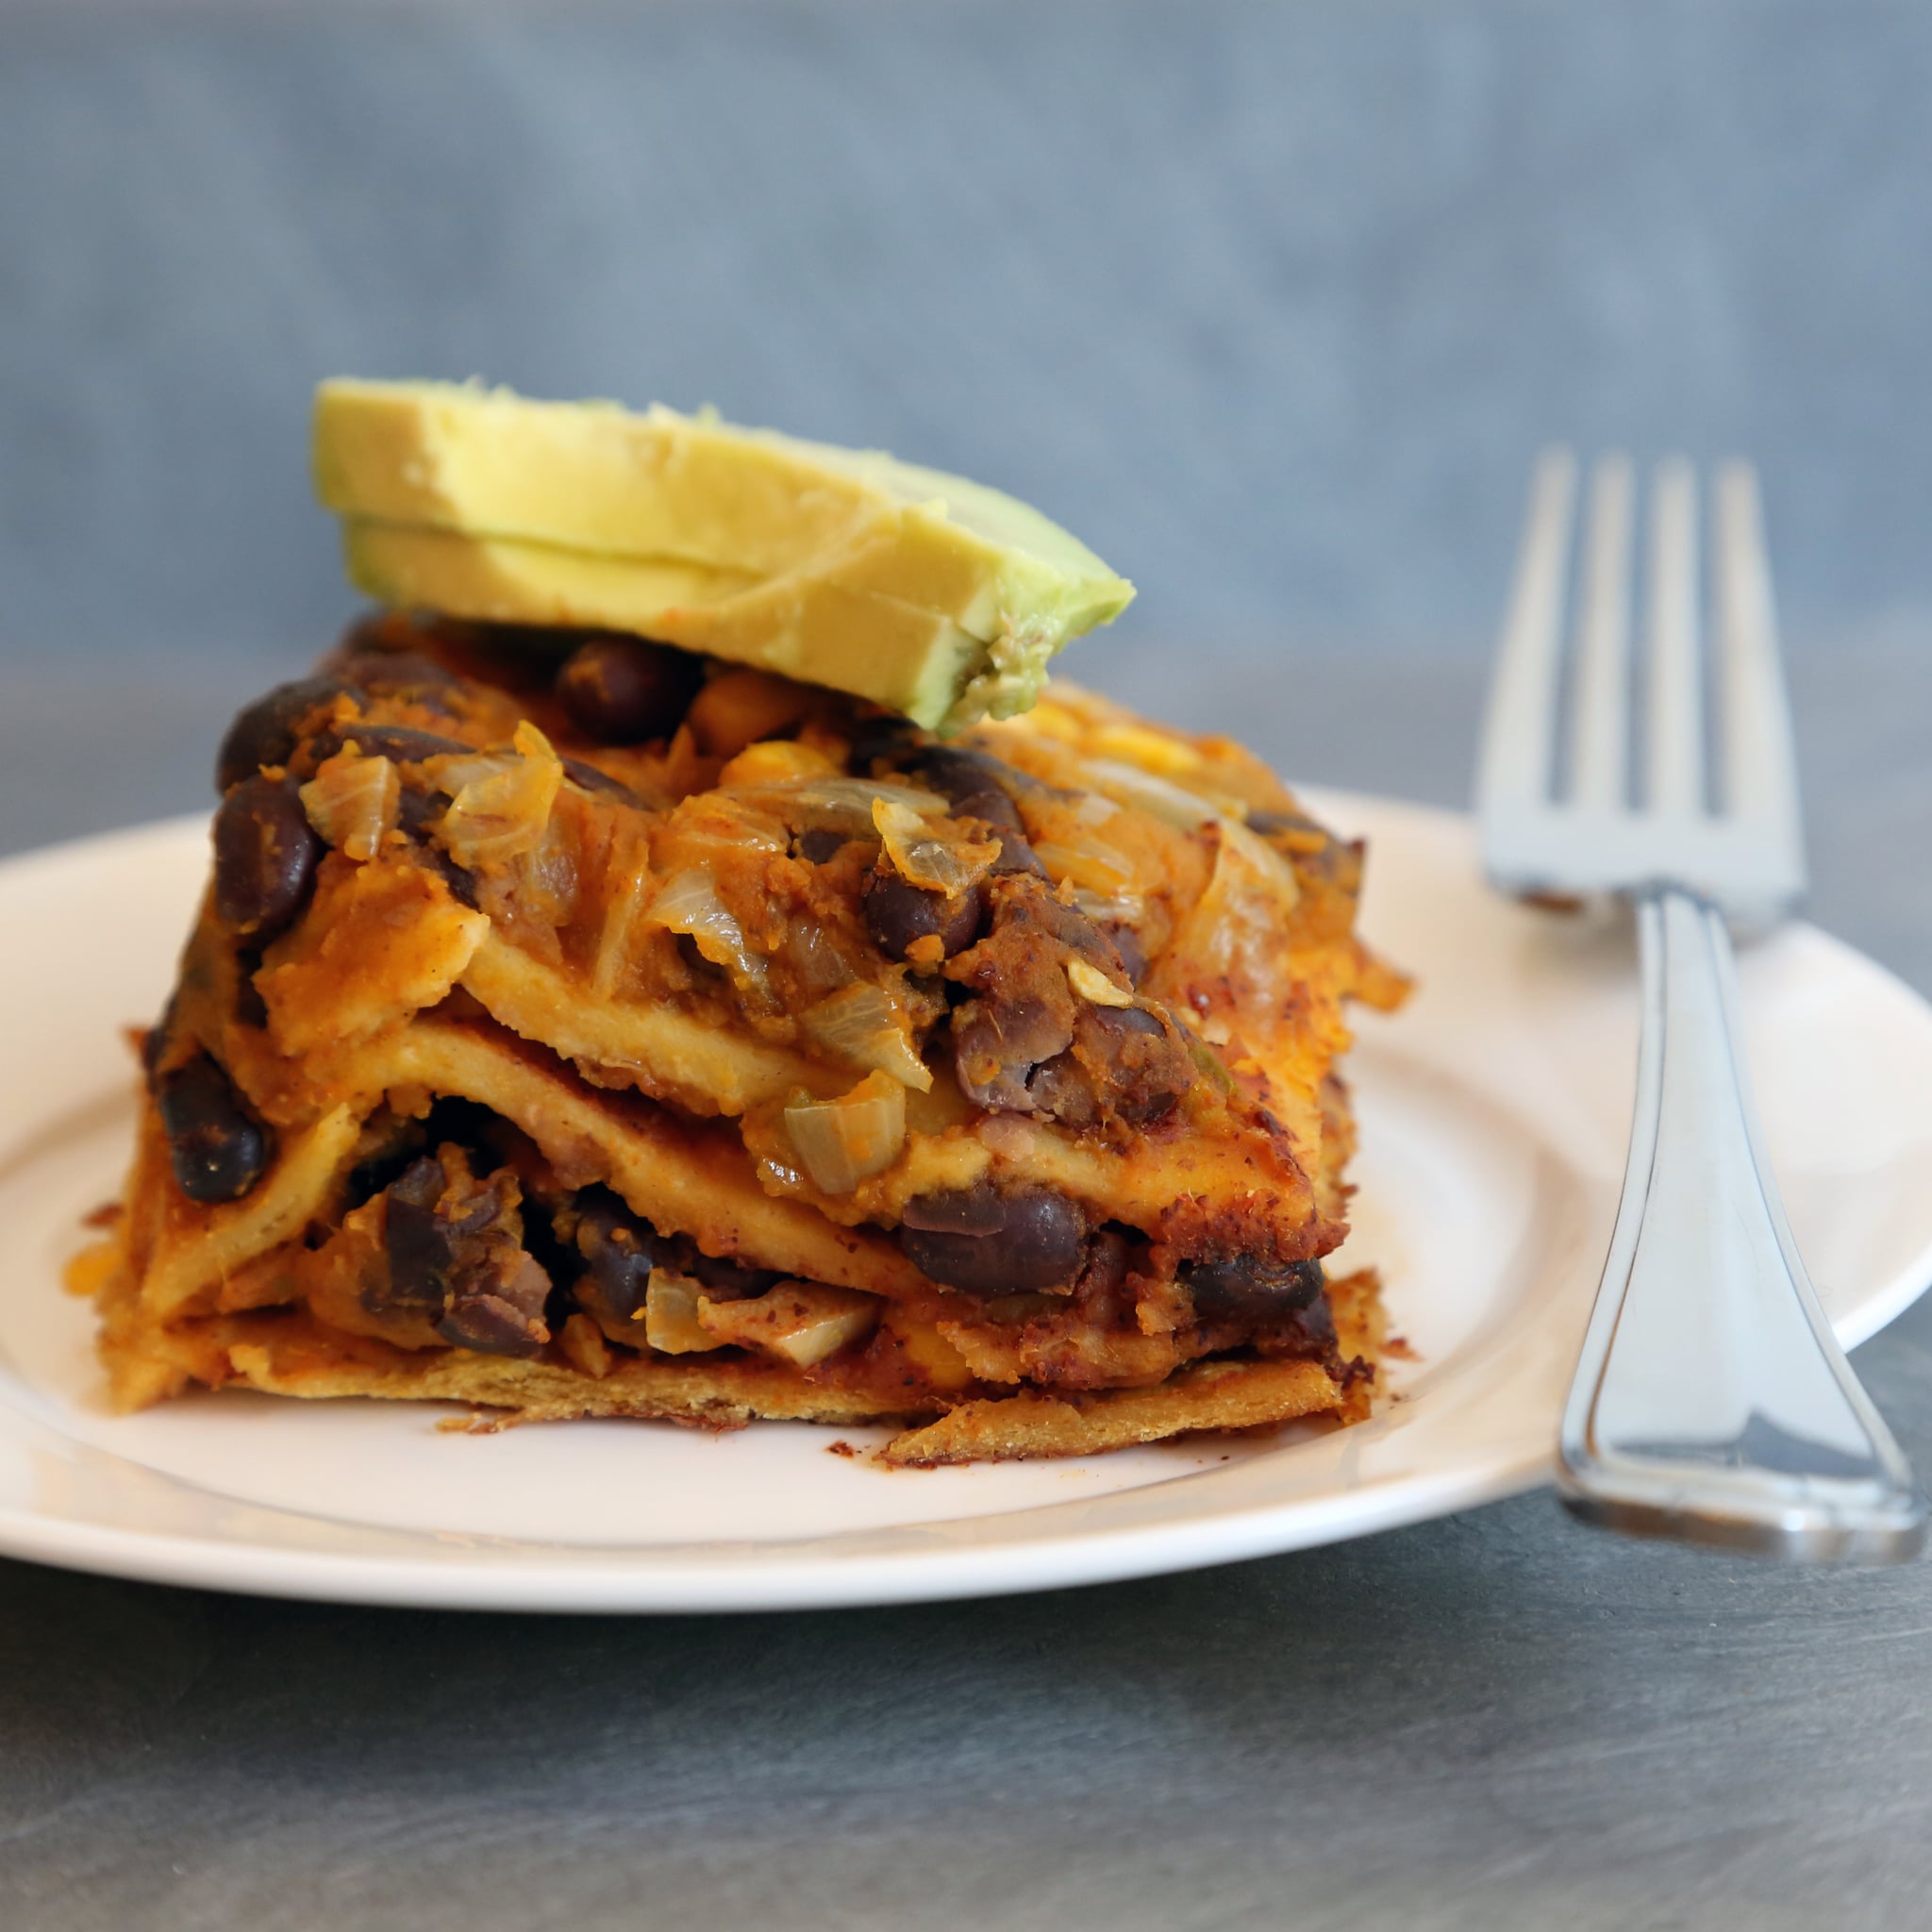 Crockpot Mexican Lasagna - This Pilgrim Life